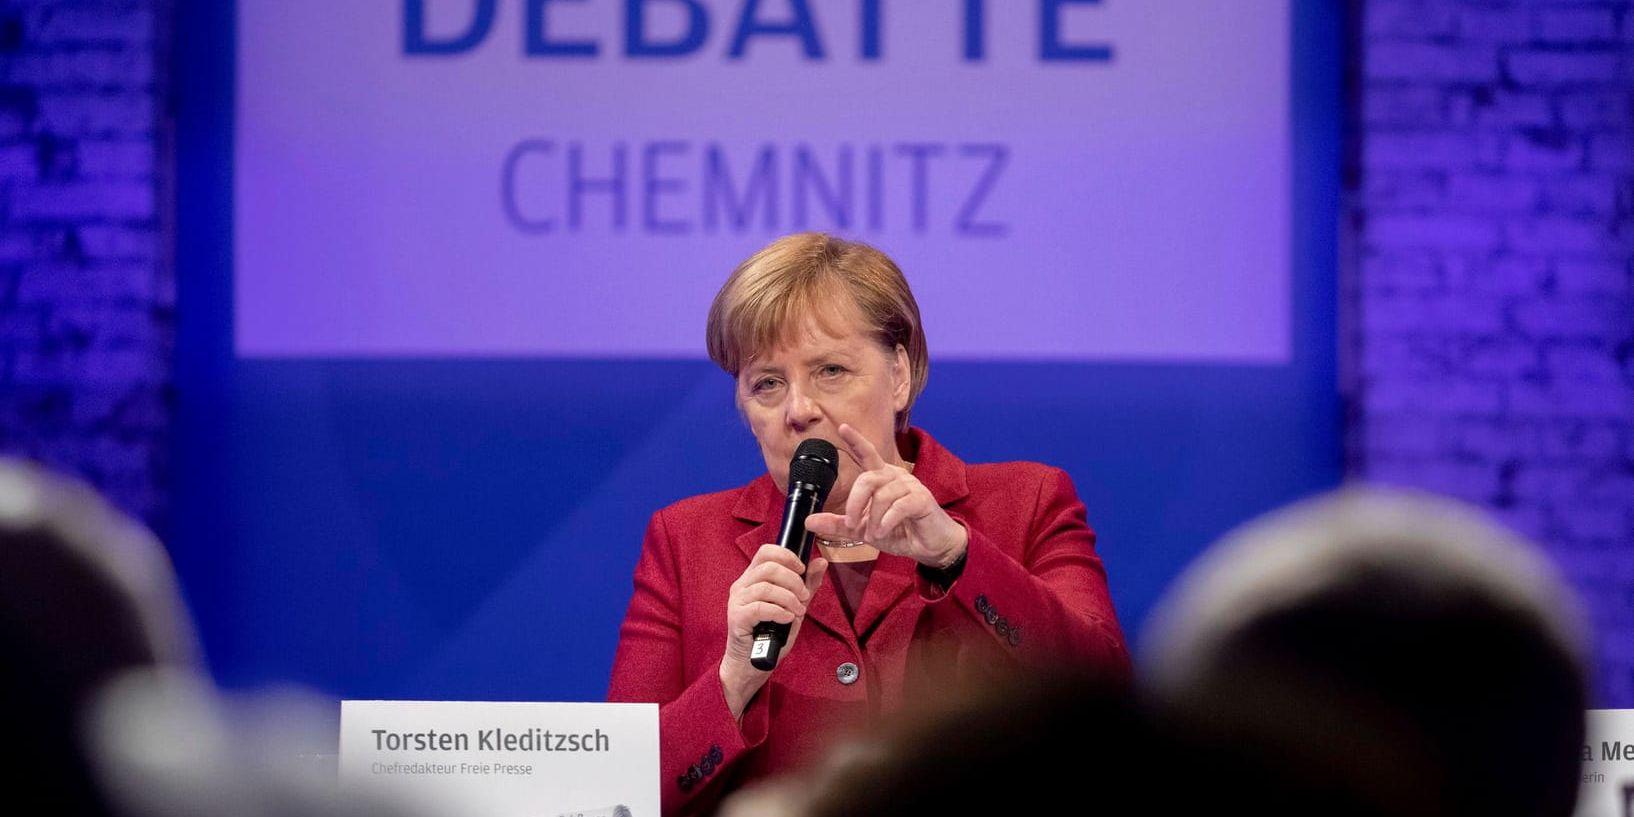 Tysklands förbundskansler Angela Merkel under en debatt i Chemnitz.